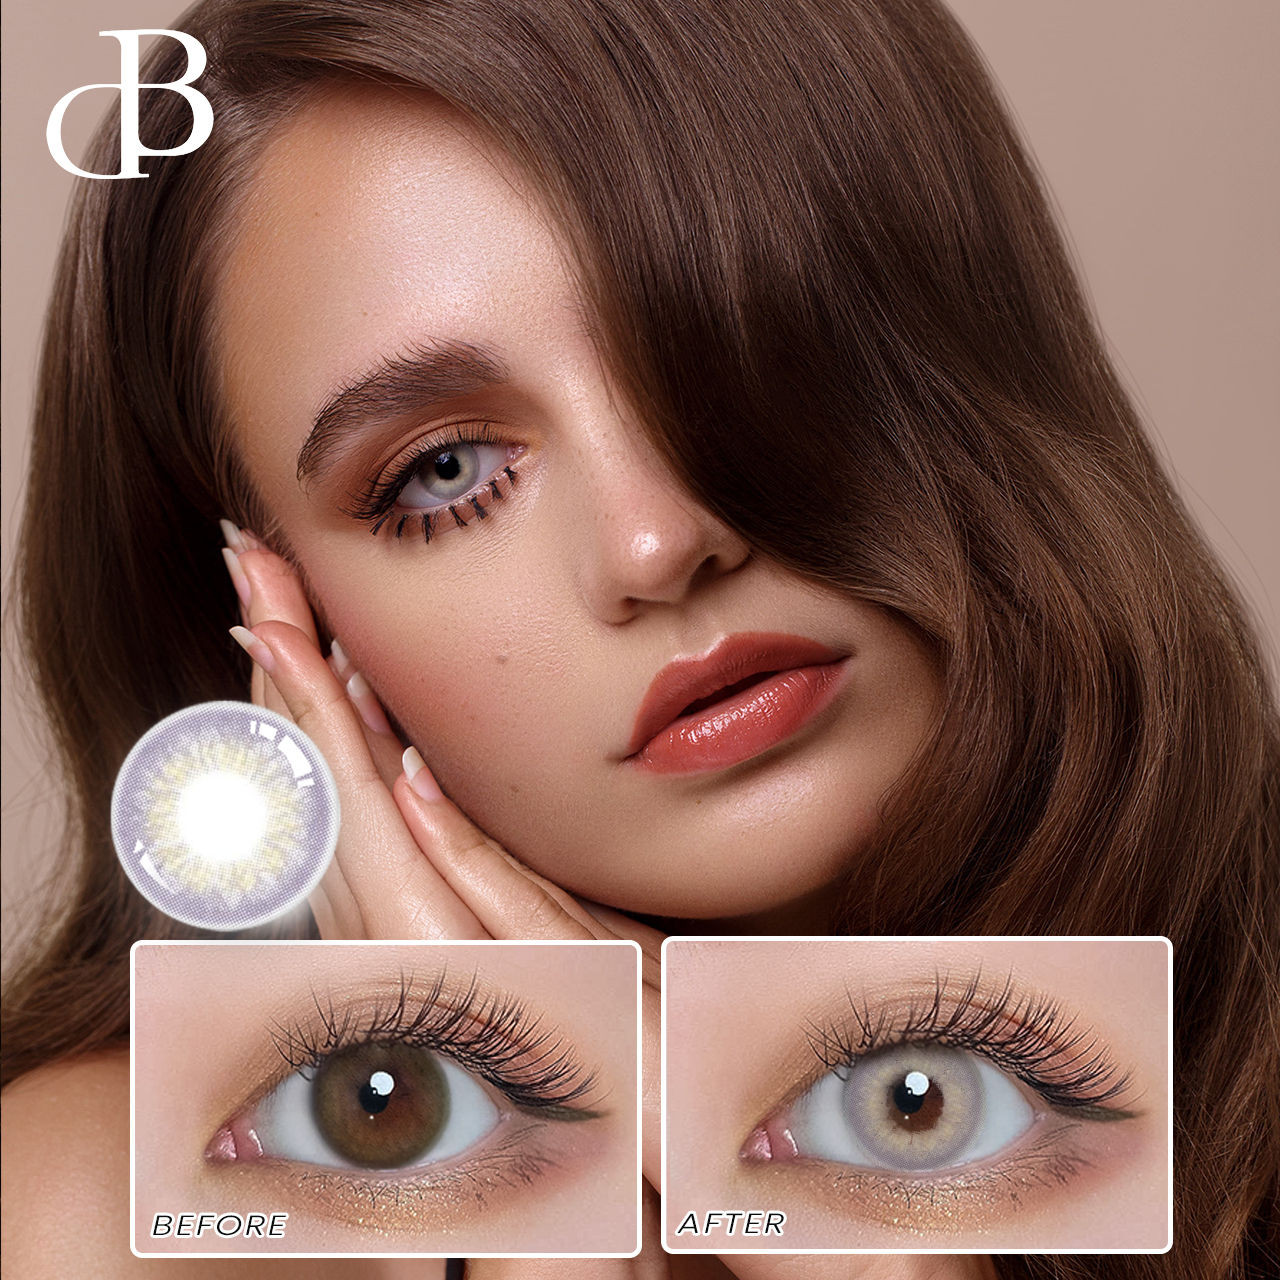 Kontaktiniai lęšiai Didmeninė prekyba Spalvoti kontaktiniai lęšiai Grožio didelių akių spalvos švieži kontaktiniai lęšiai